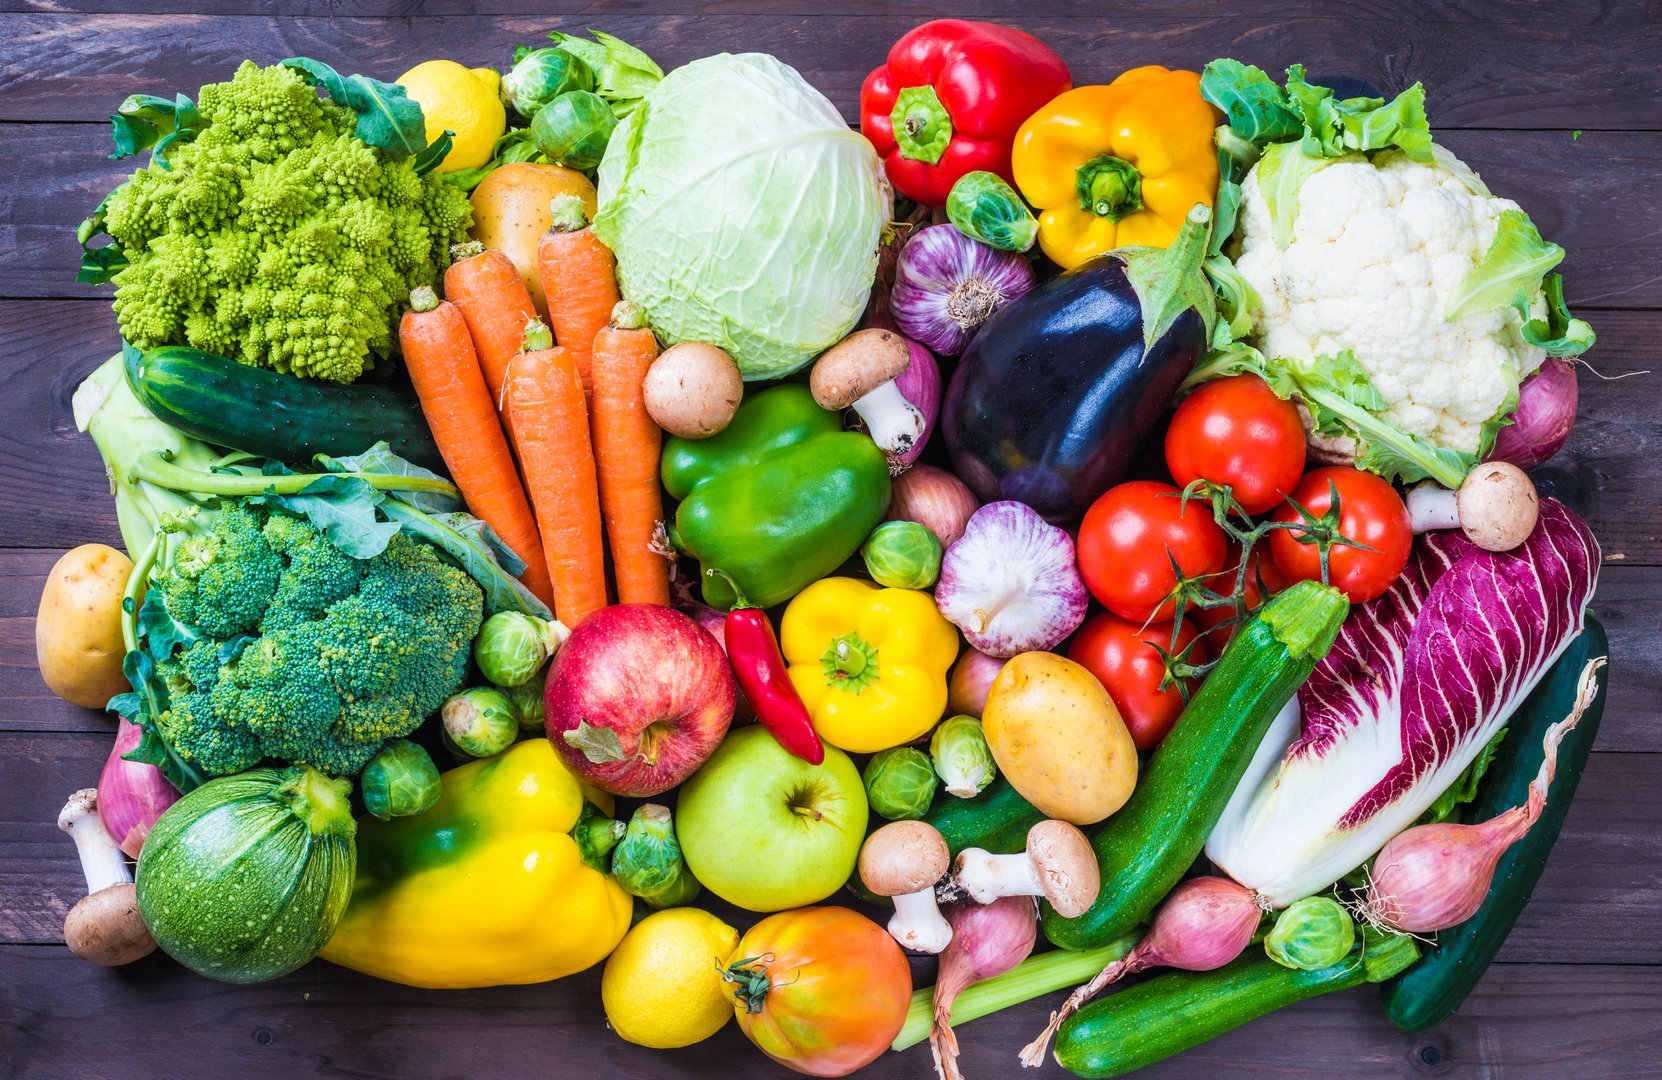 فوائد الفاكهة والخضروات للجسم والقيمة الغذائية لهم ونصائح للحصول على فائدتهم بالكامل